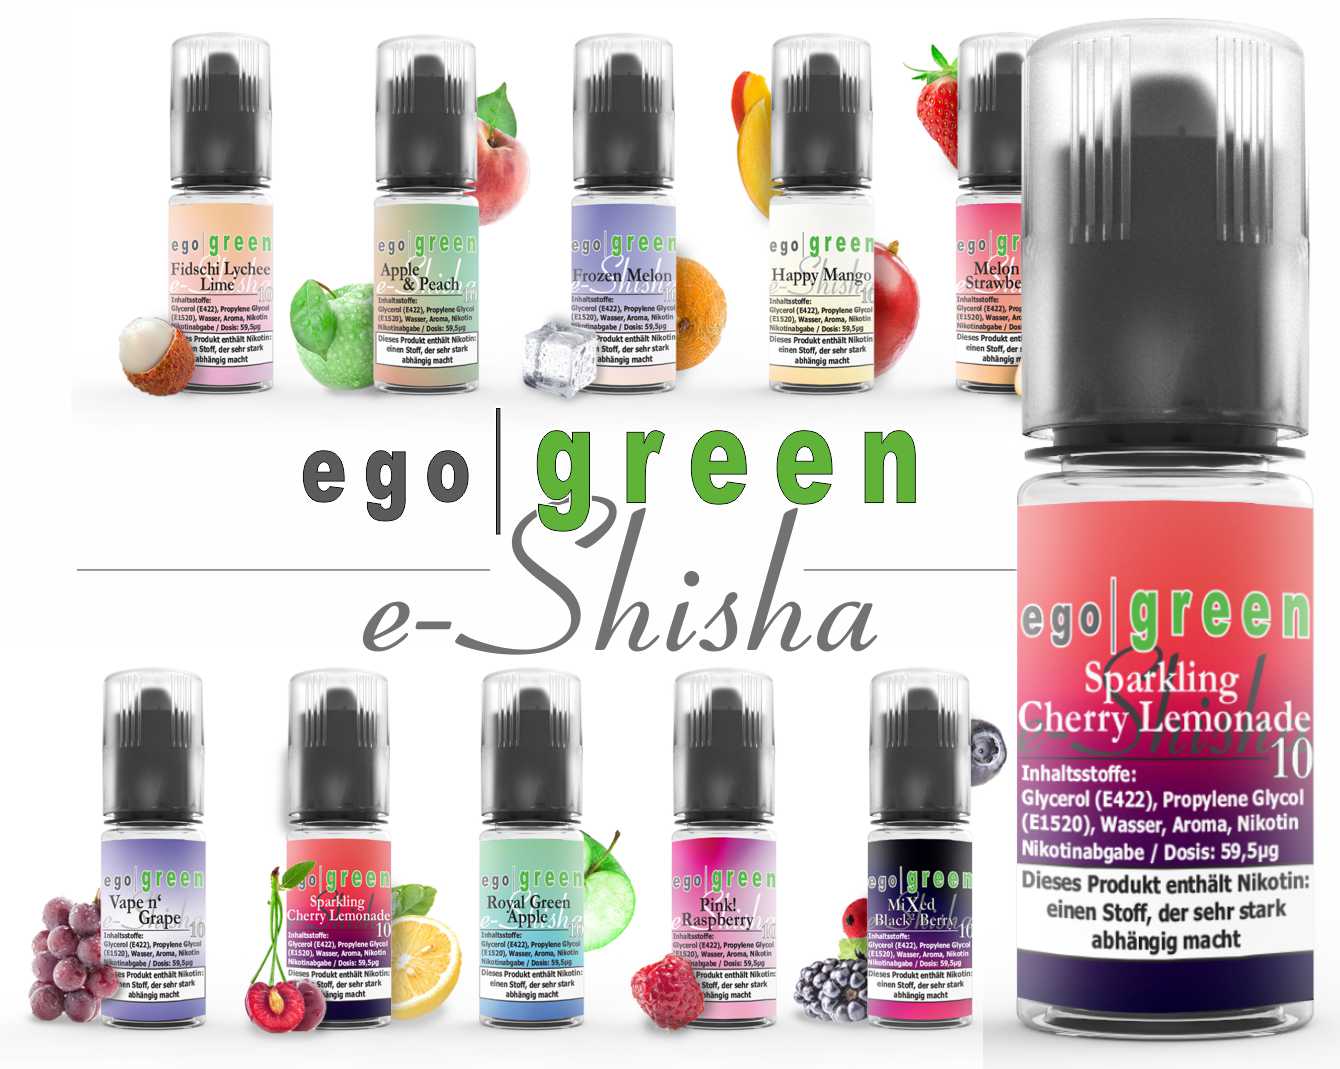 egogreen Sparkling Cherry Lemonade Nikotinsalz e-Shisha Liquid kaufen